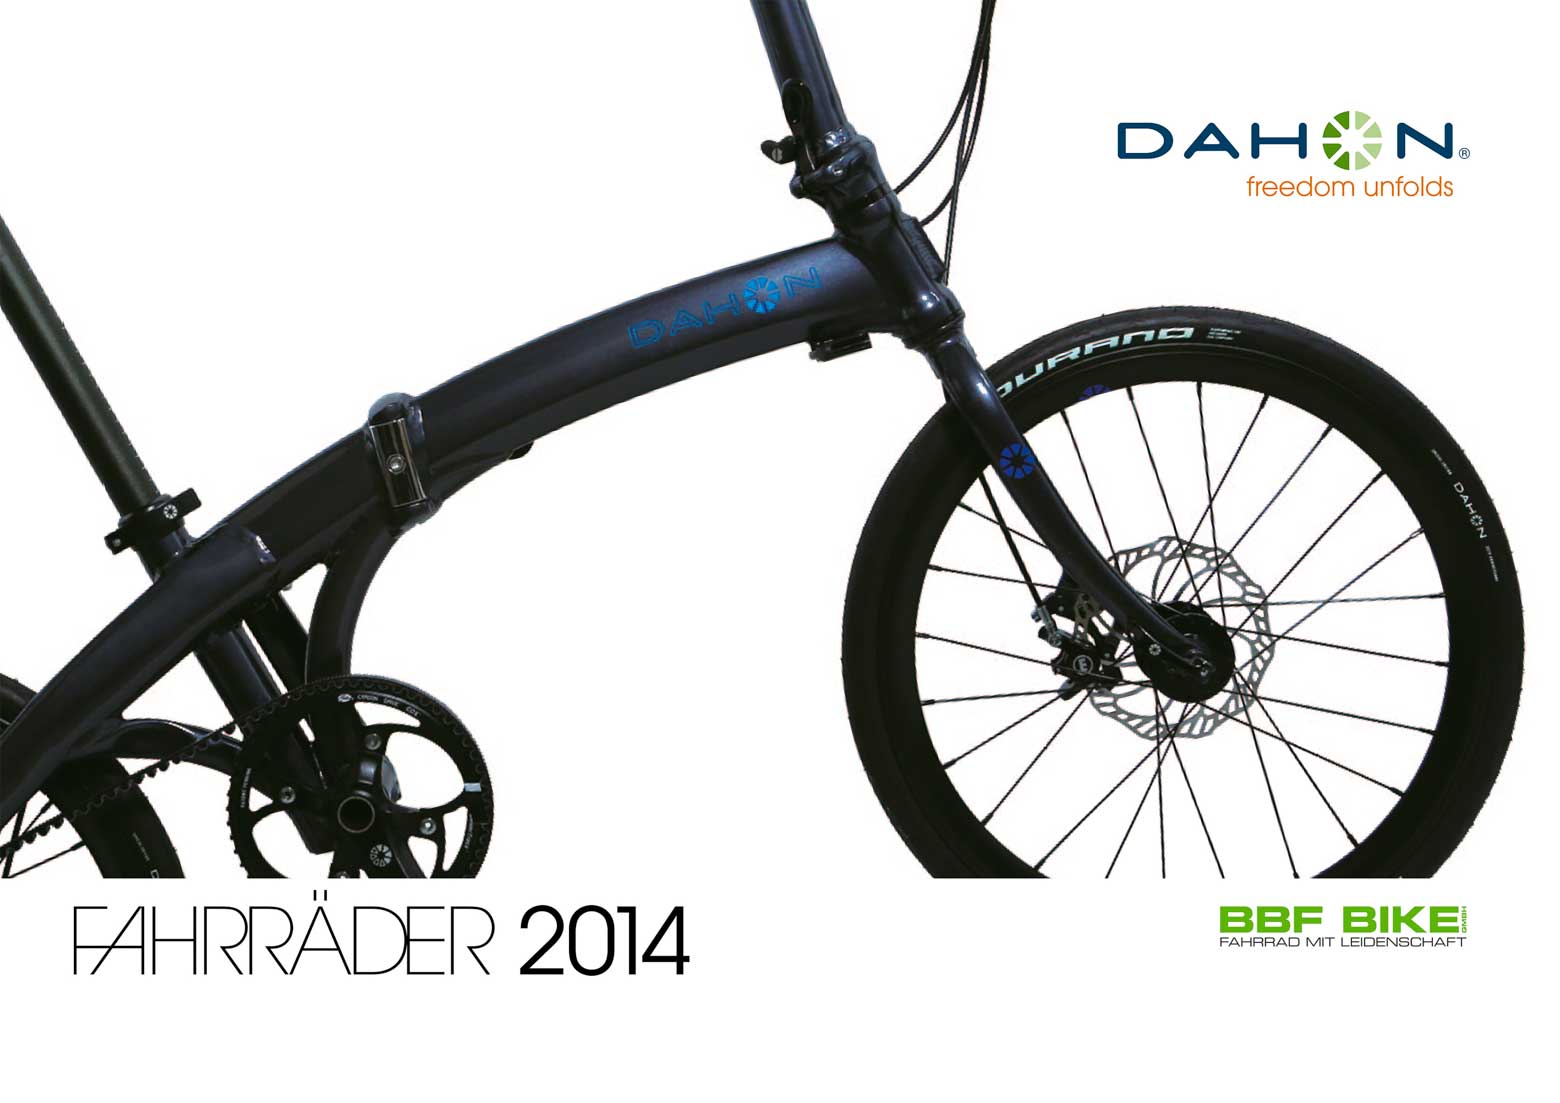 Dahon Fahrrader 2014 - page 001 main image